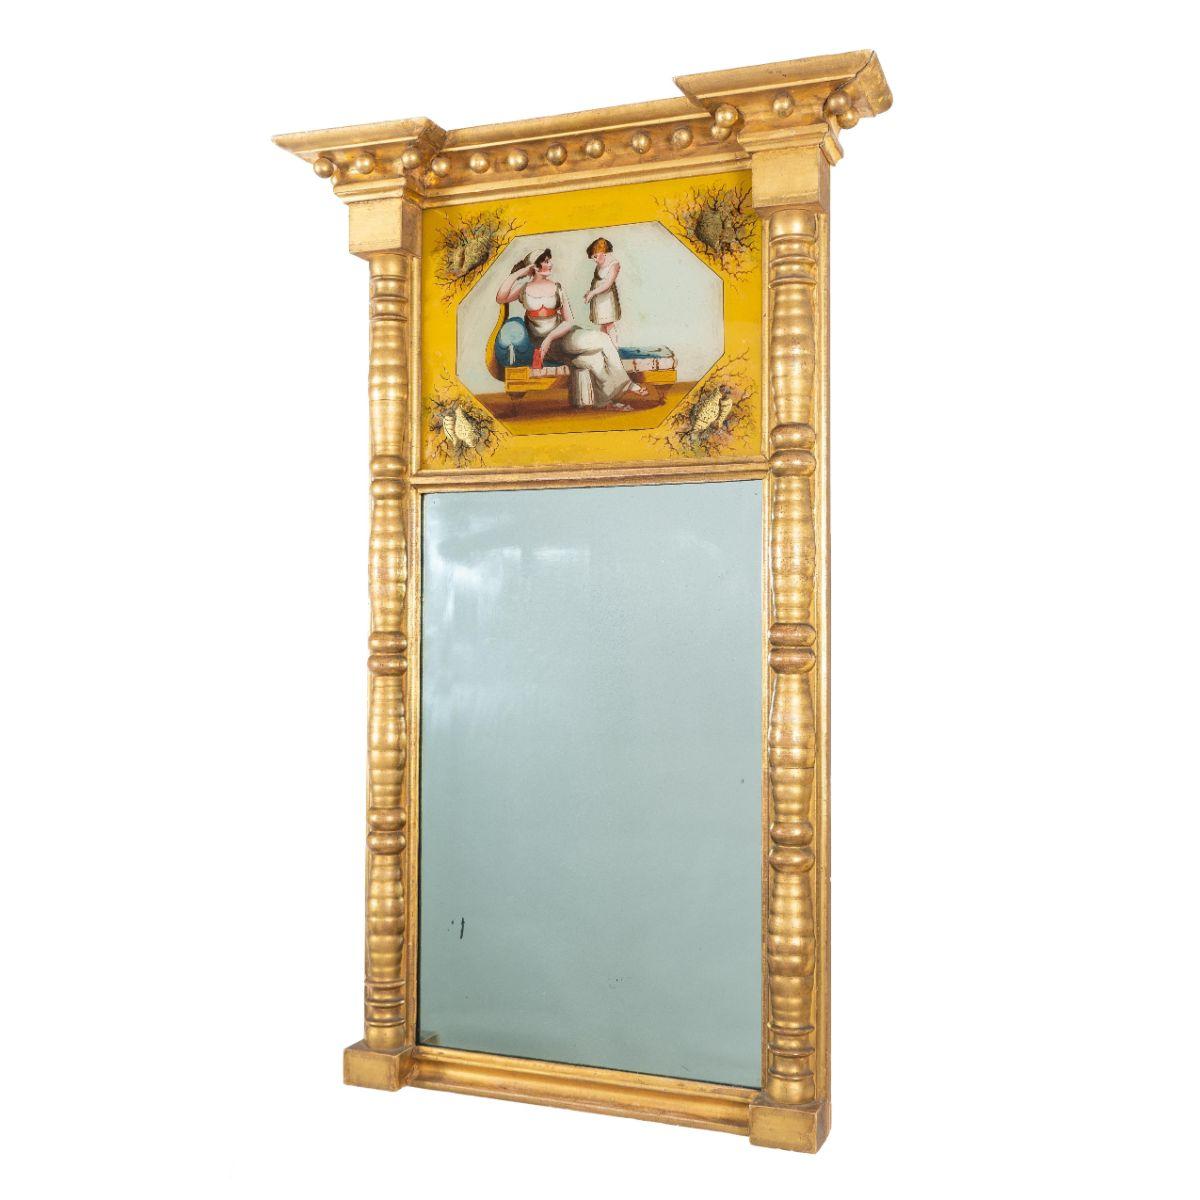 Miroir tabernacle américain Sheraton en gesso doré avec panneau de verre supérieur églomisé au-dessus d'un miroir à amalgame de mercure. Les colonnes tournées soutiennent un entablement et une corniche qui est équipée de pendentifs à boules.